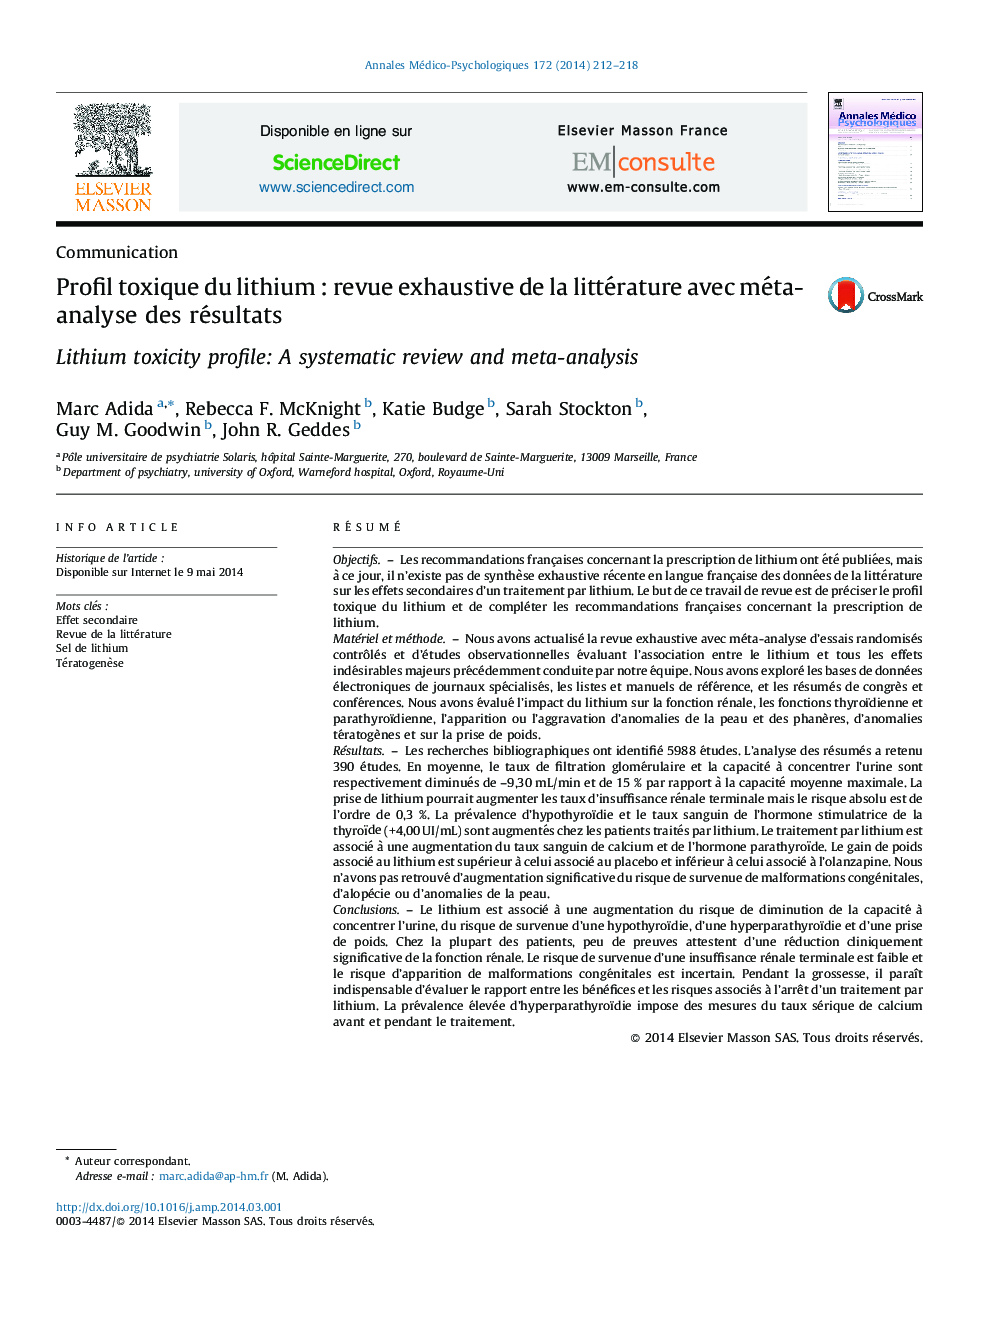 Profil toxique du lithium : revue exhaustive de la littérature avec méta-analyse des résultats